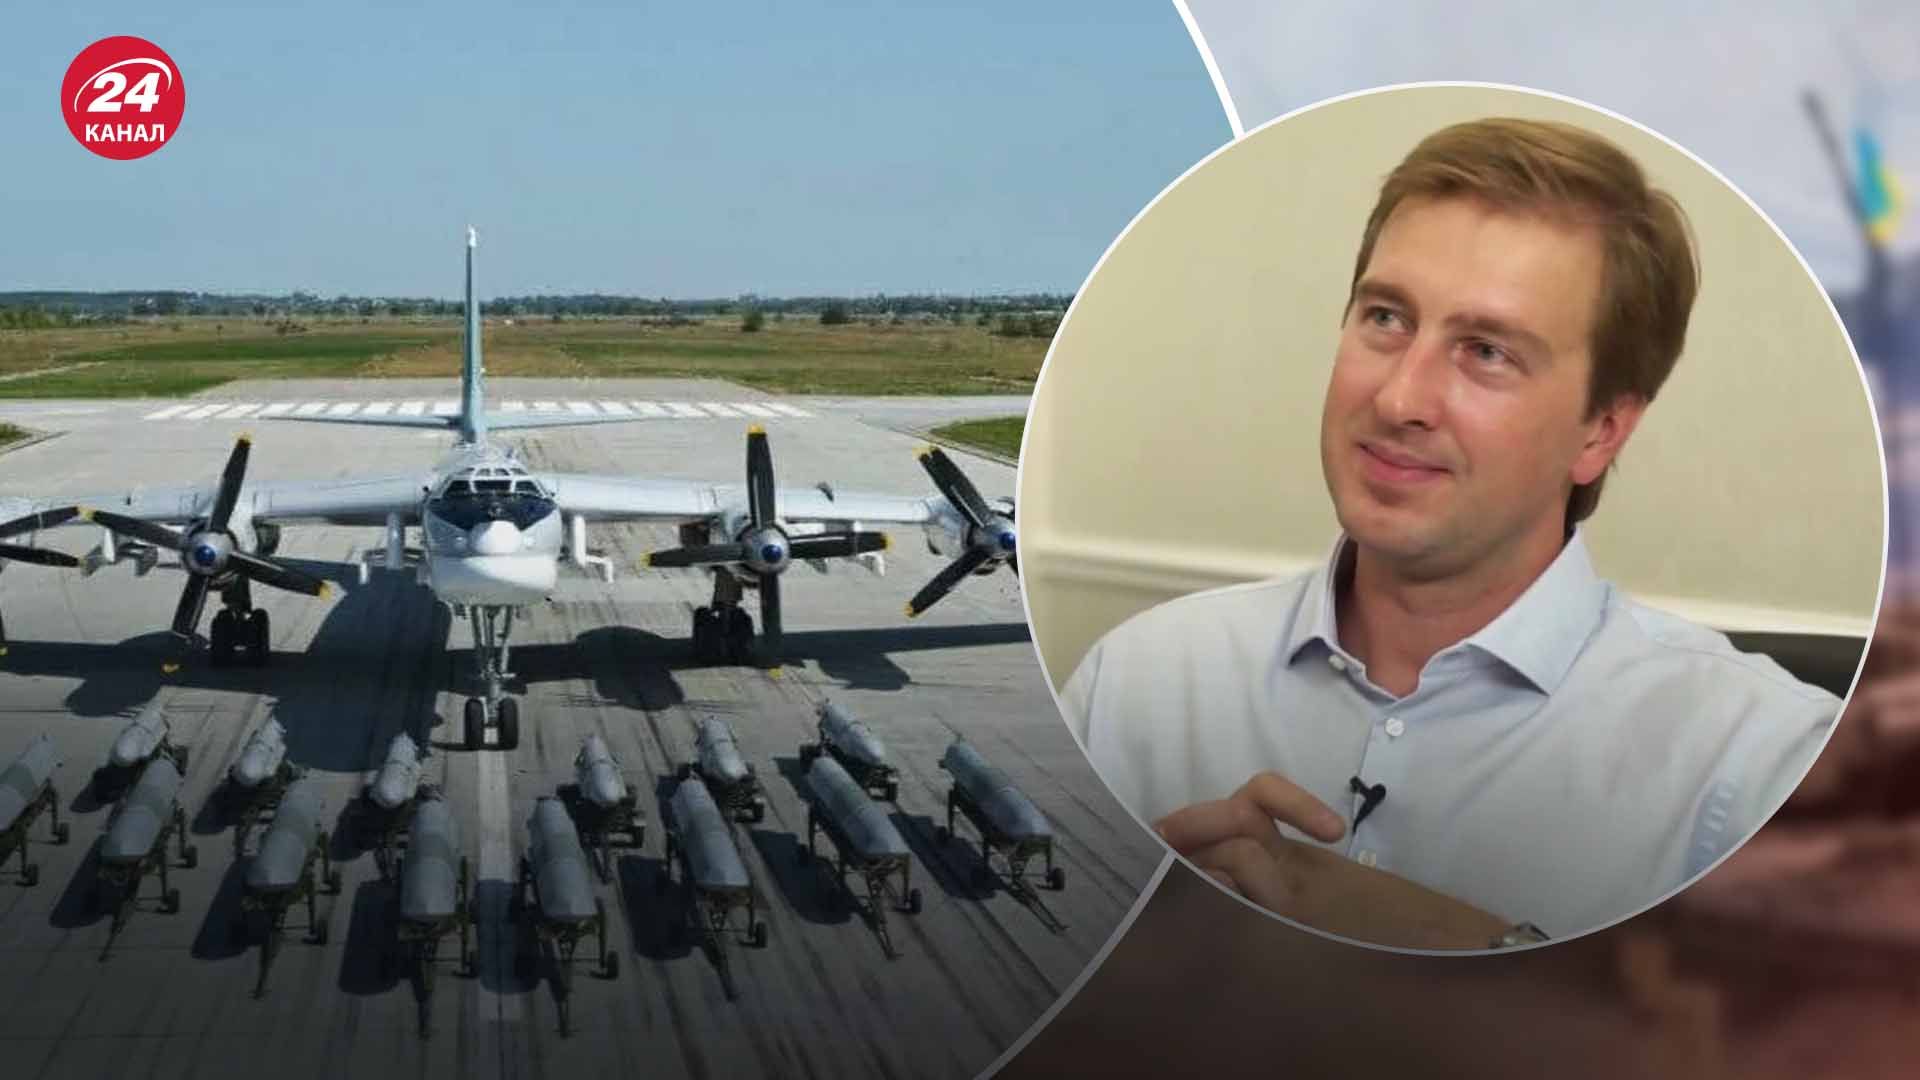 "Хлопок" на аэродромах России - как пропаганда объясняет взрывы - 24 Канал